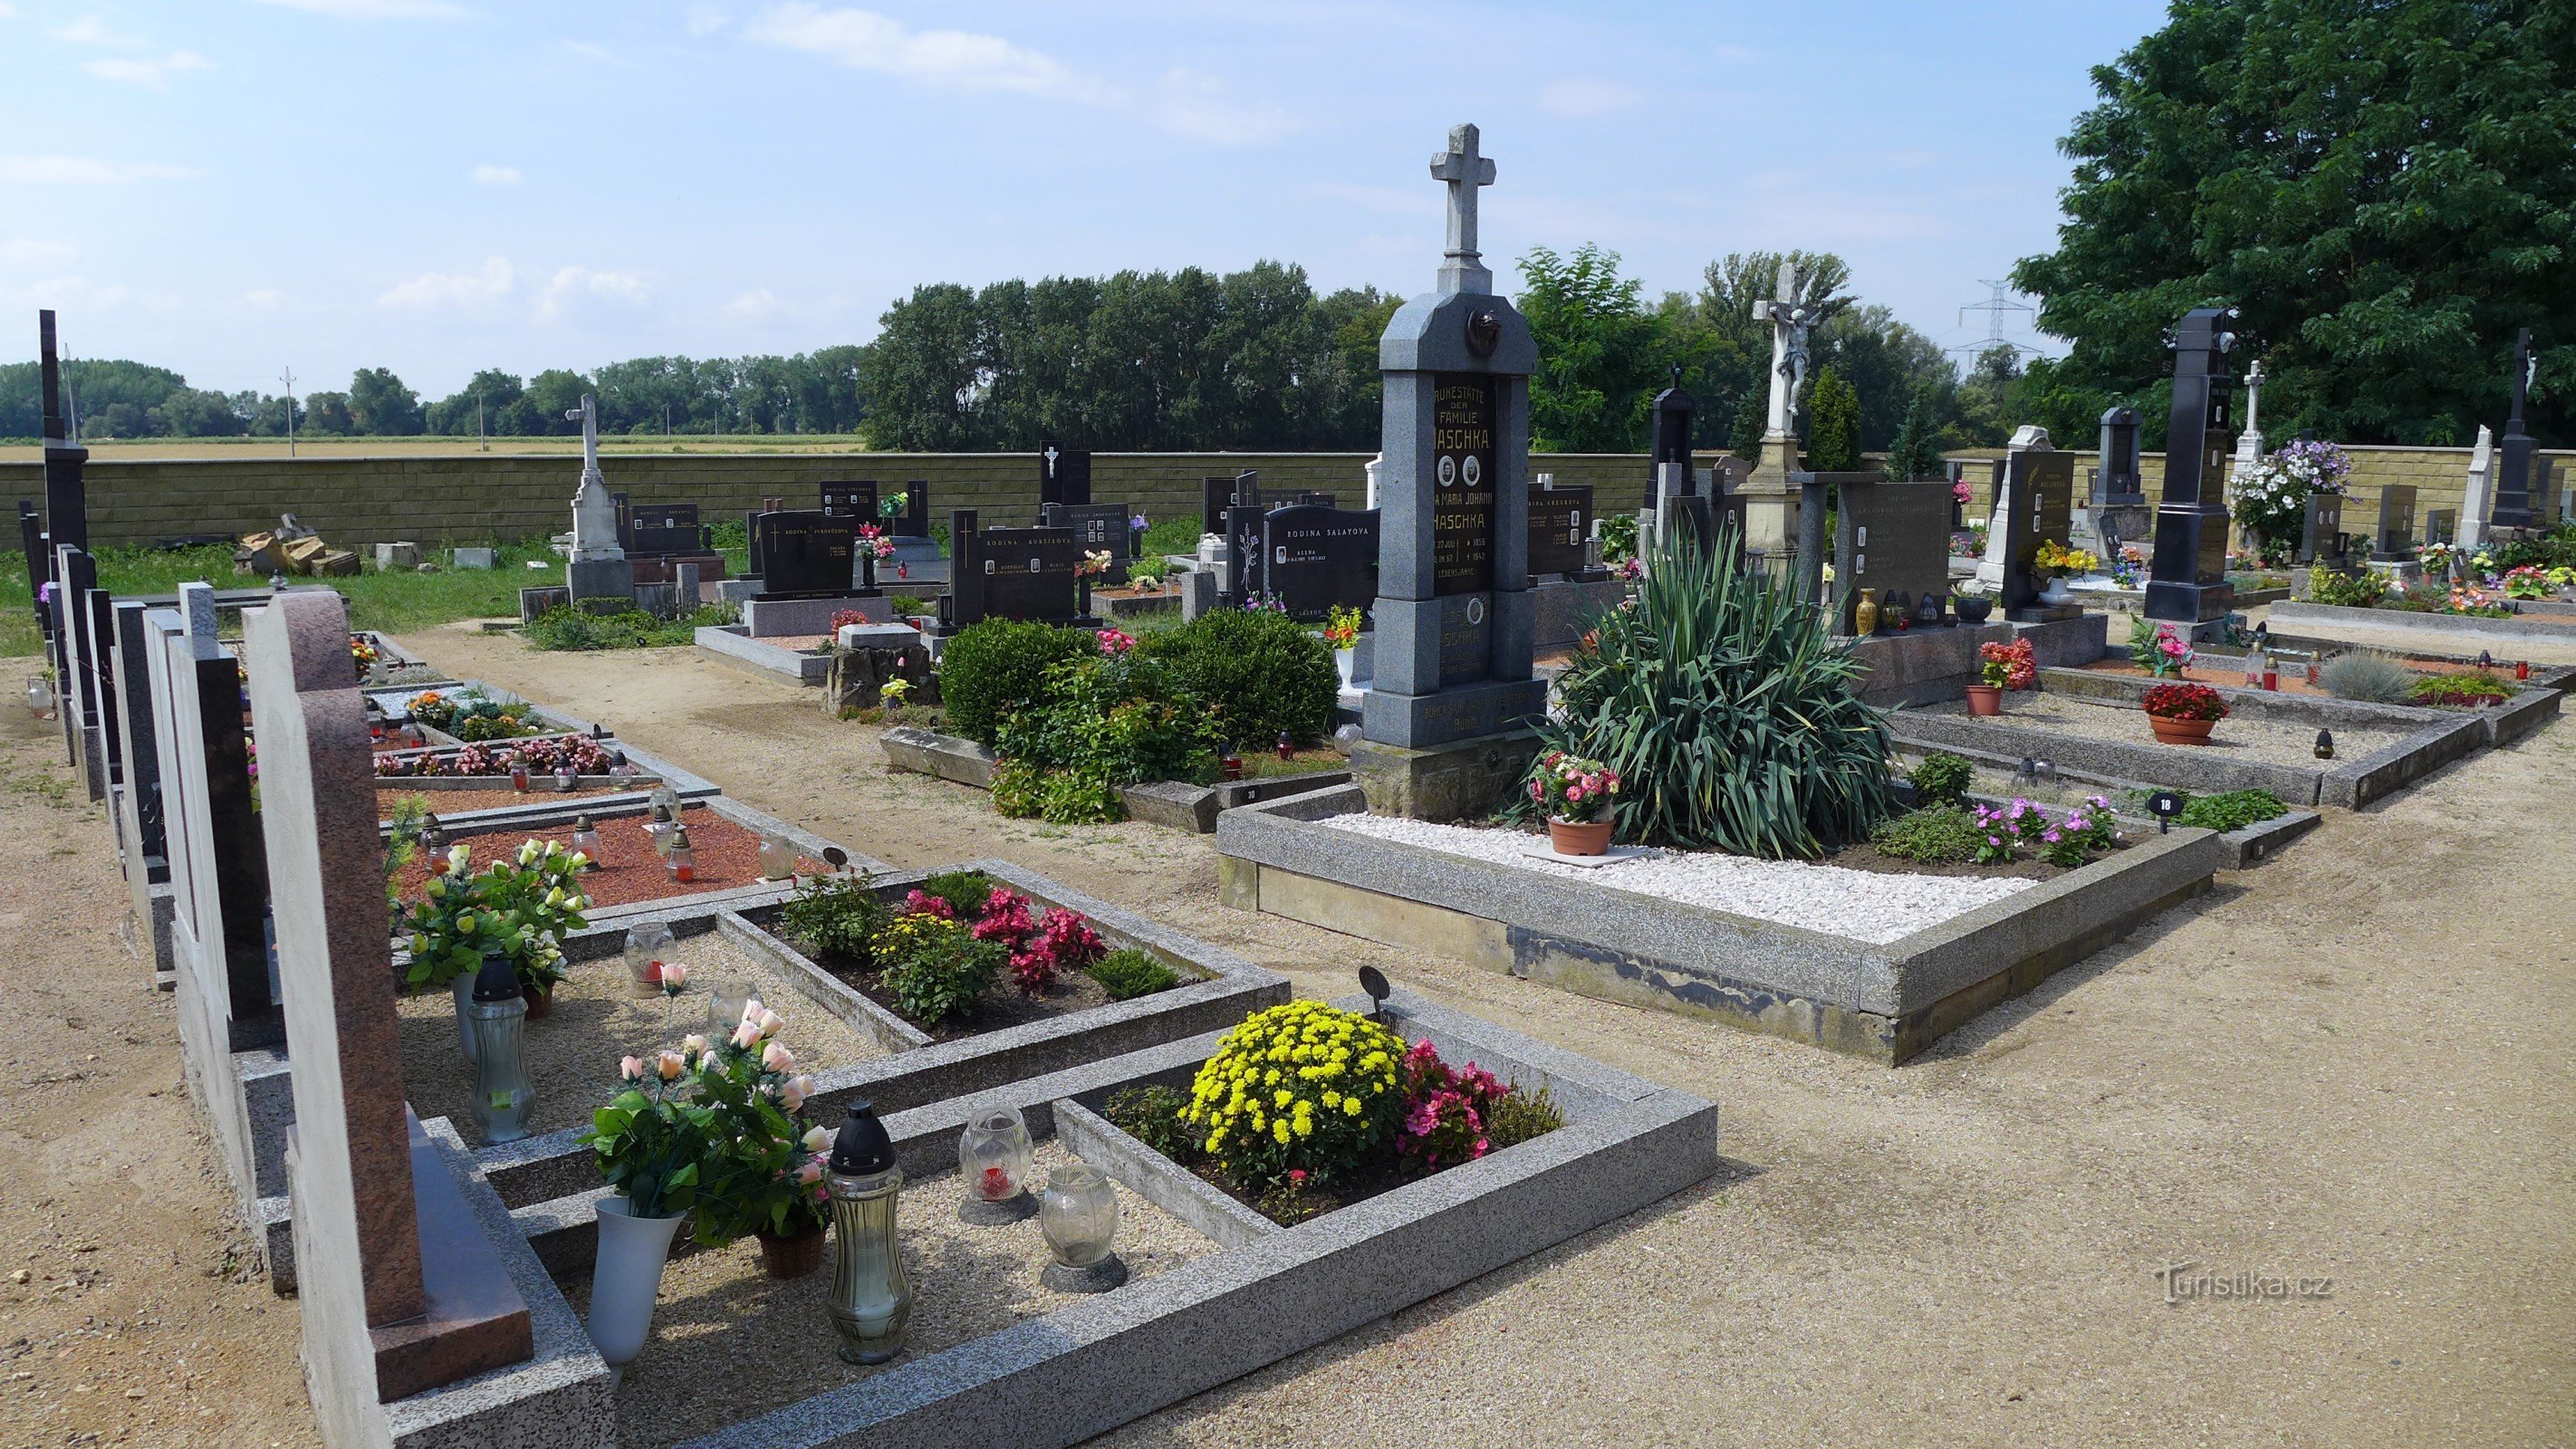 Nemčičky - cemetery